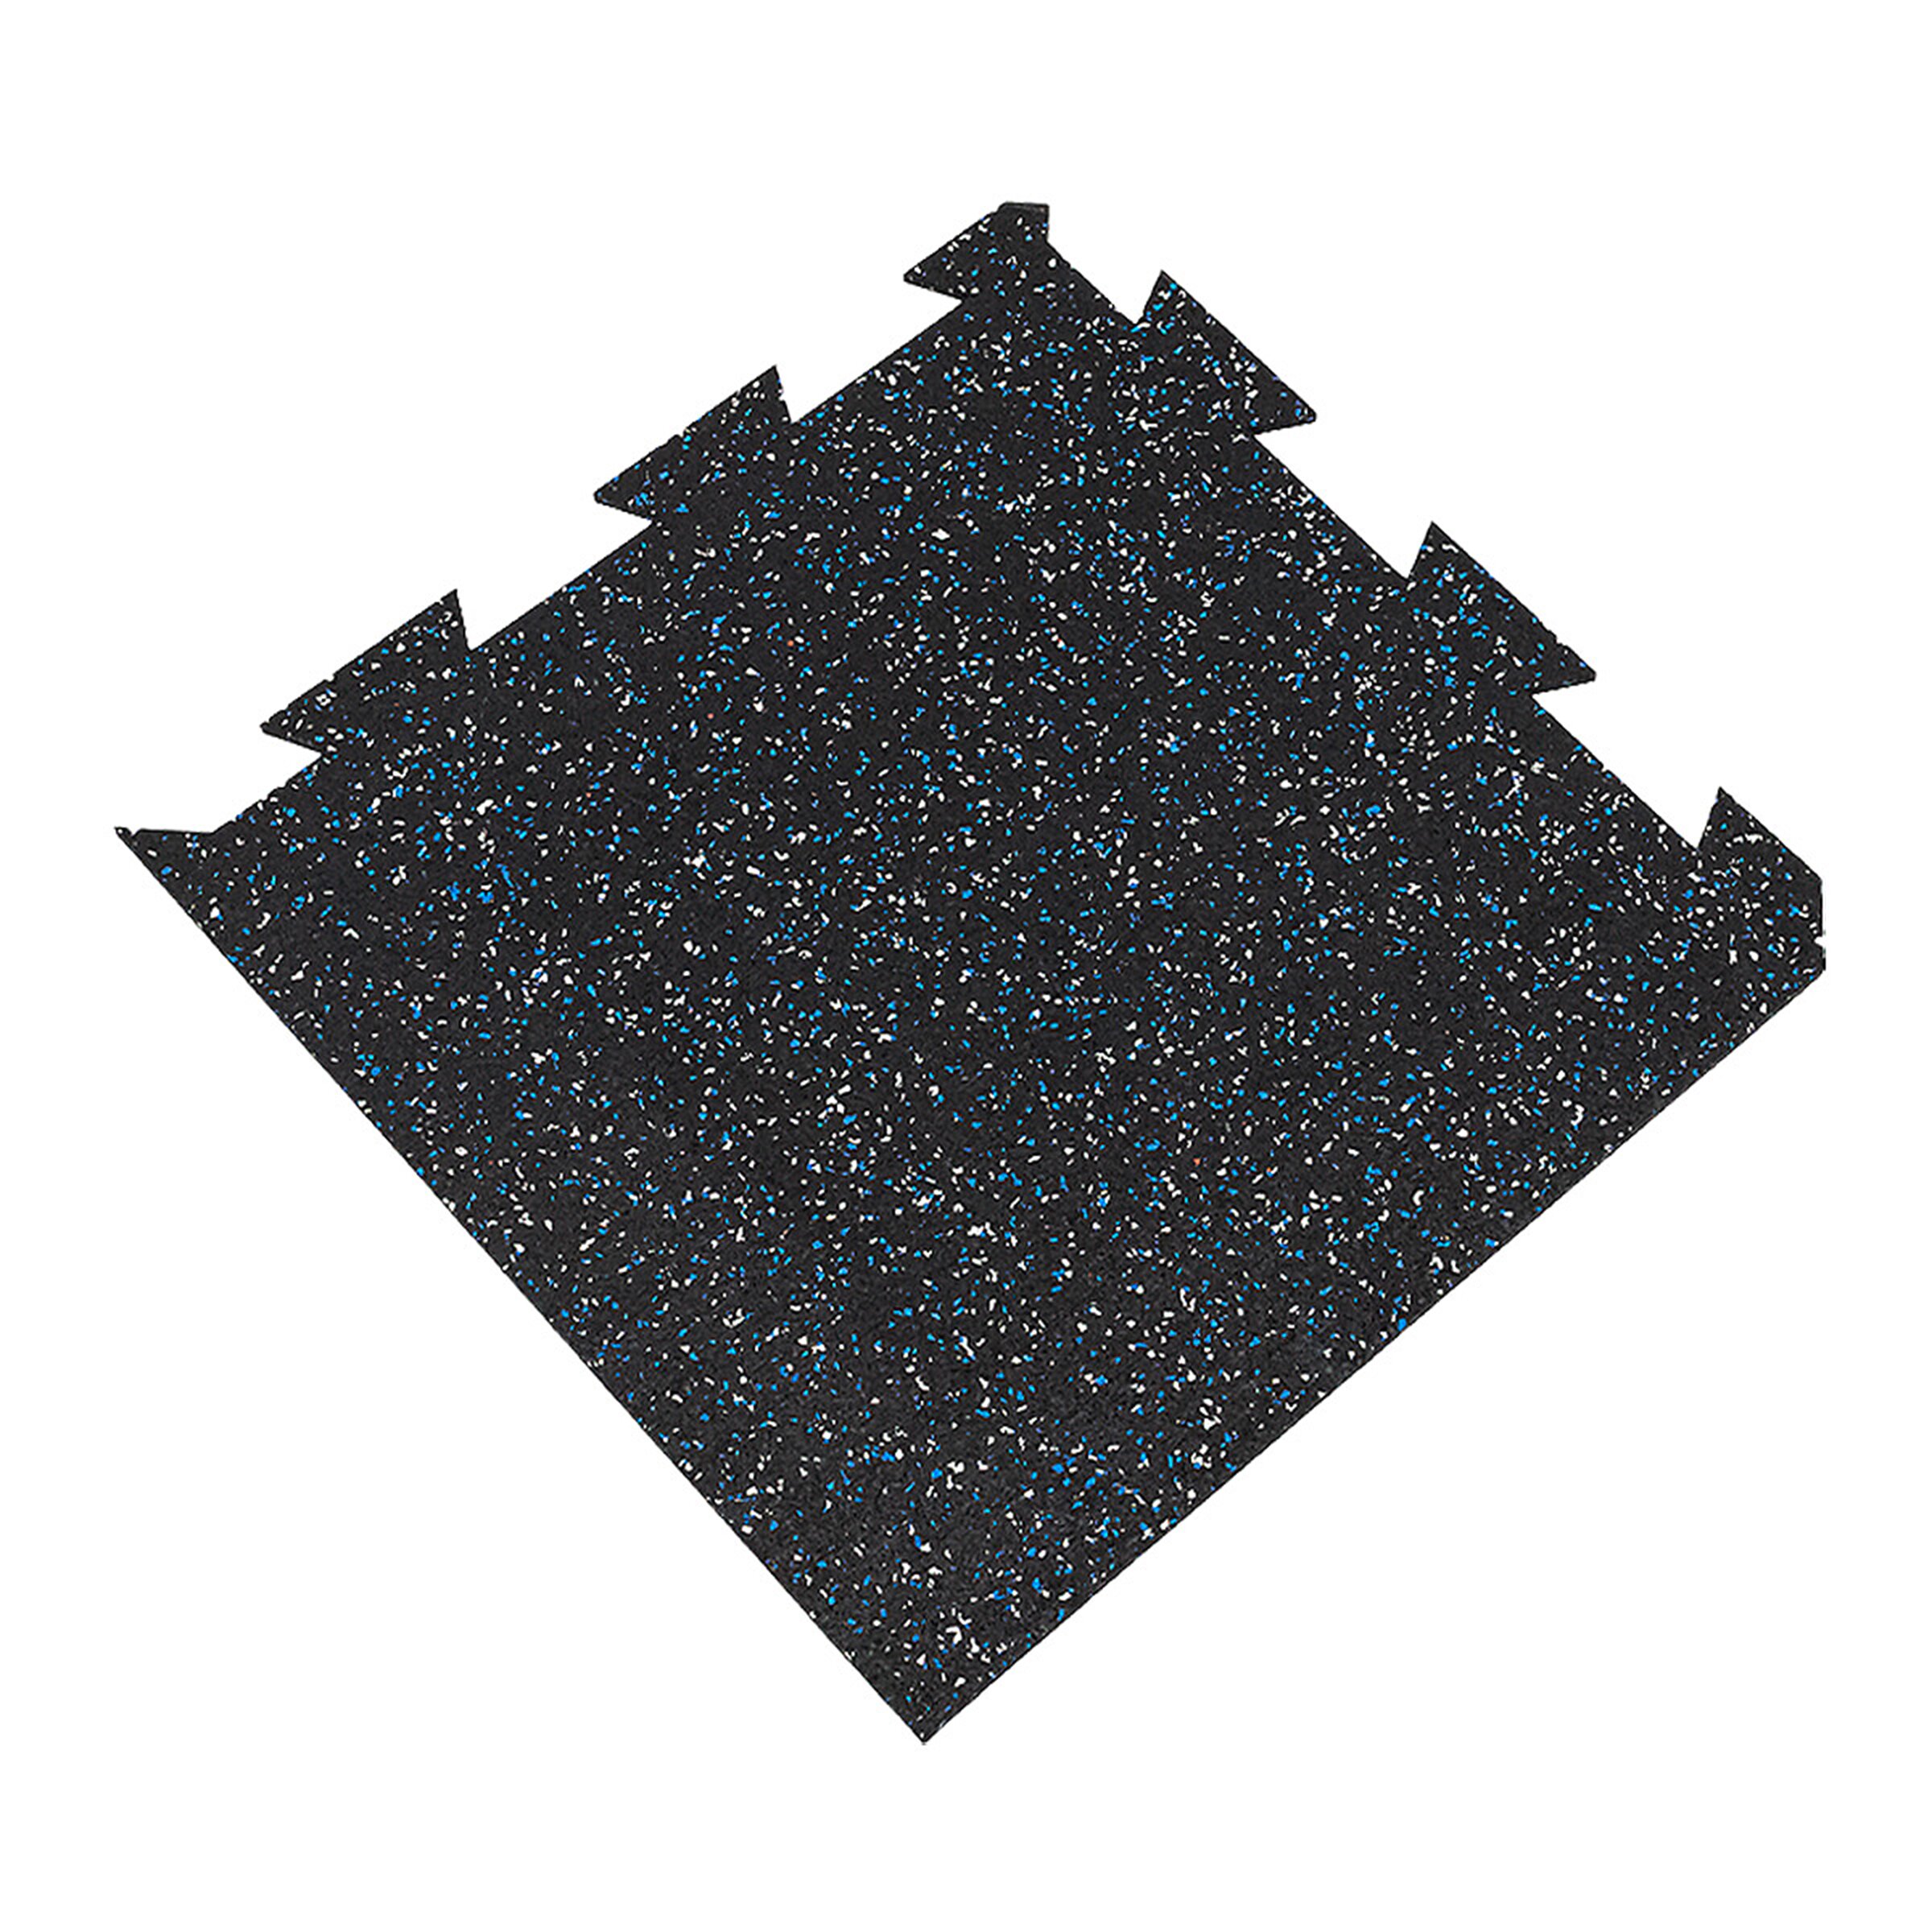 Černo-bílo-modrá podlahová guma FLOMA FitFlo SF1050 - délka 50 cm, šířka 50 cm, výška 1,6 cm